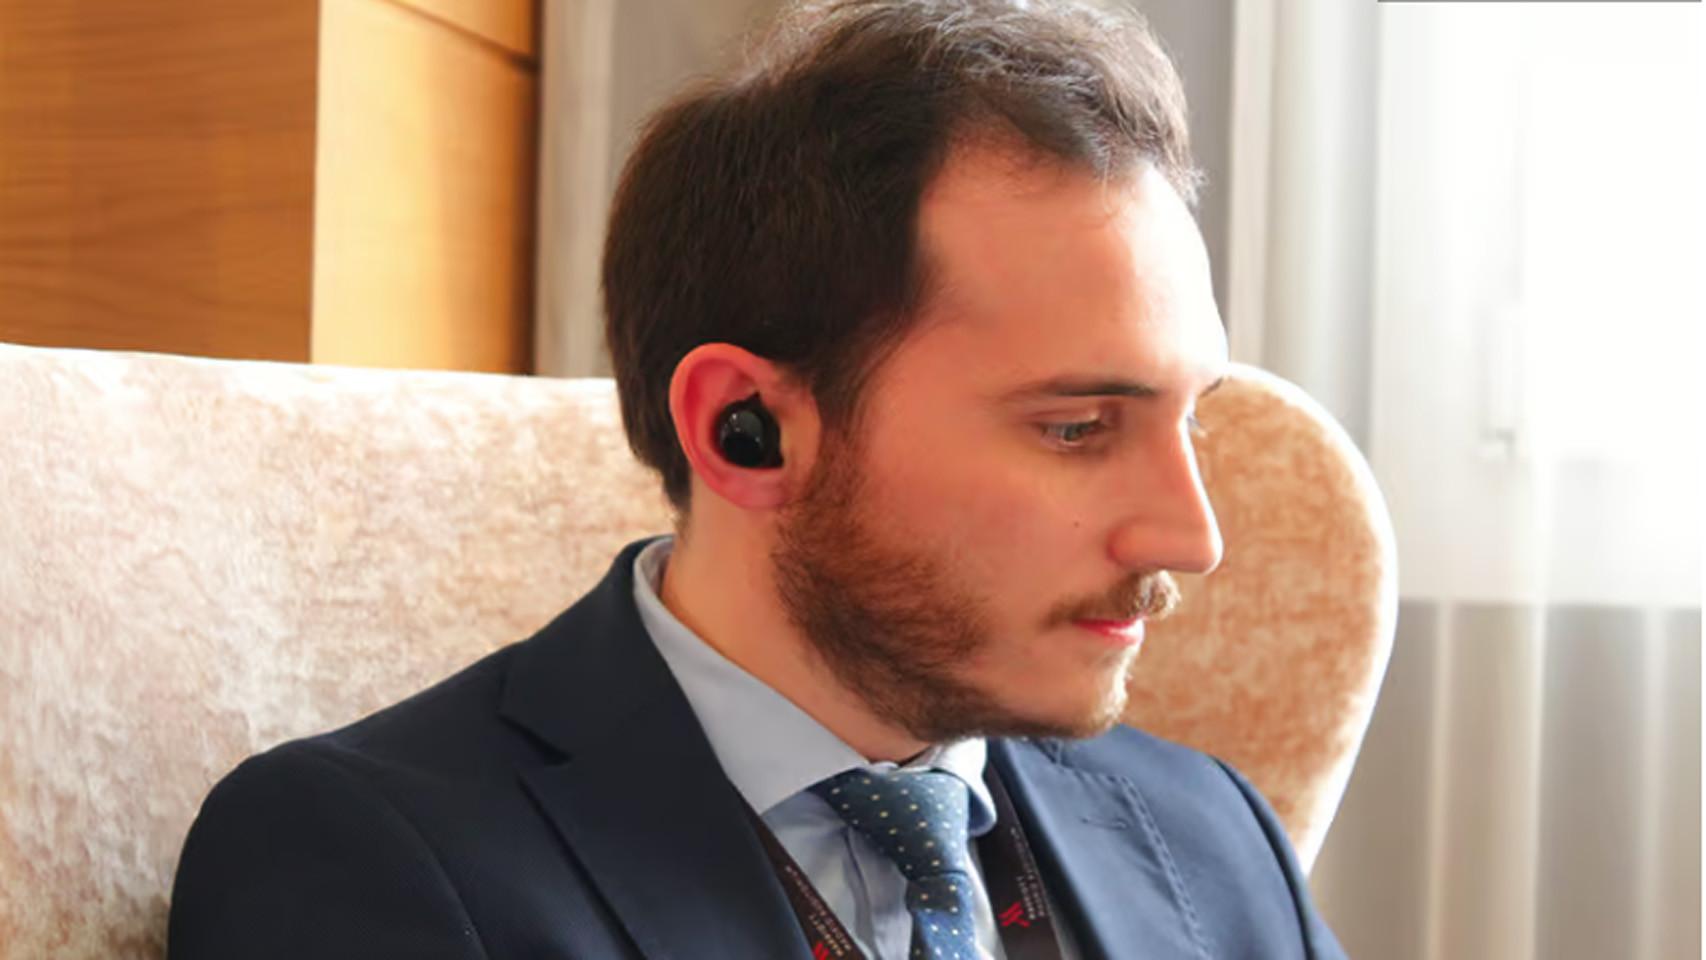 Cómo funcionan los novedosos auriculares traductores - Infobae